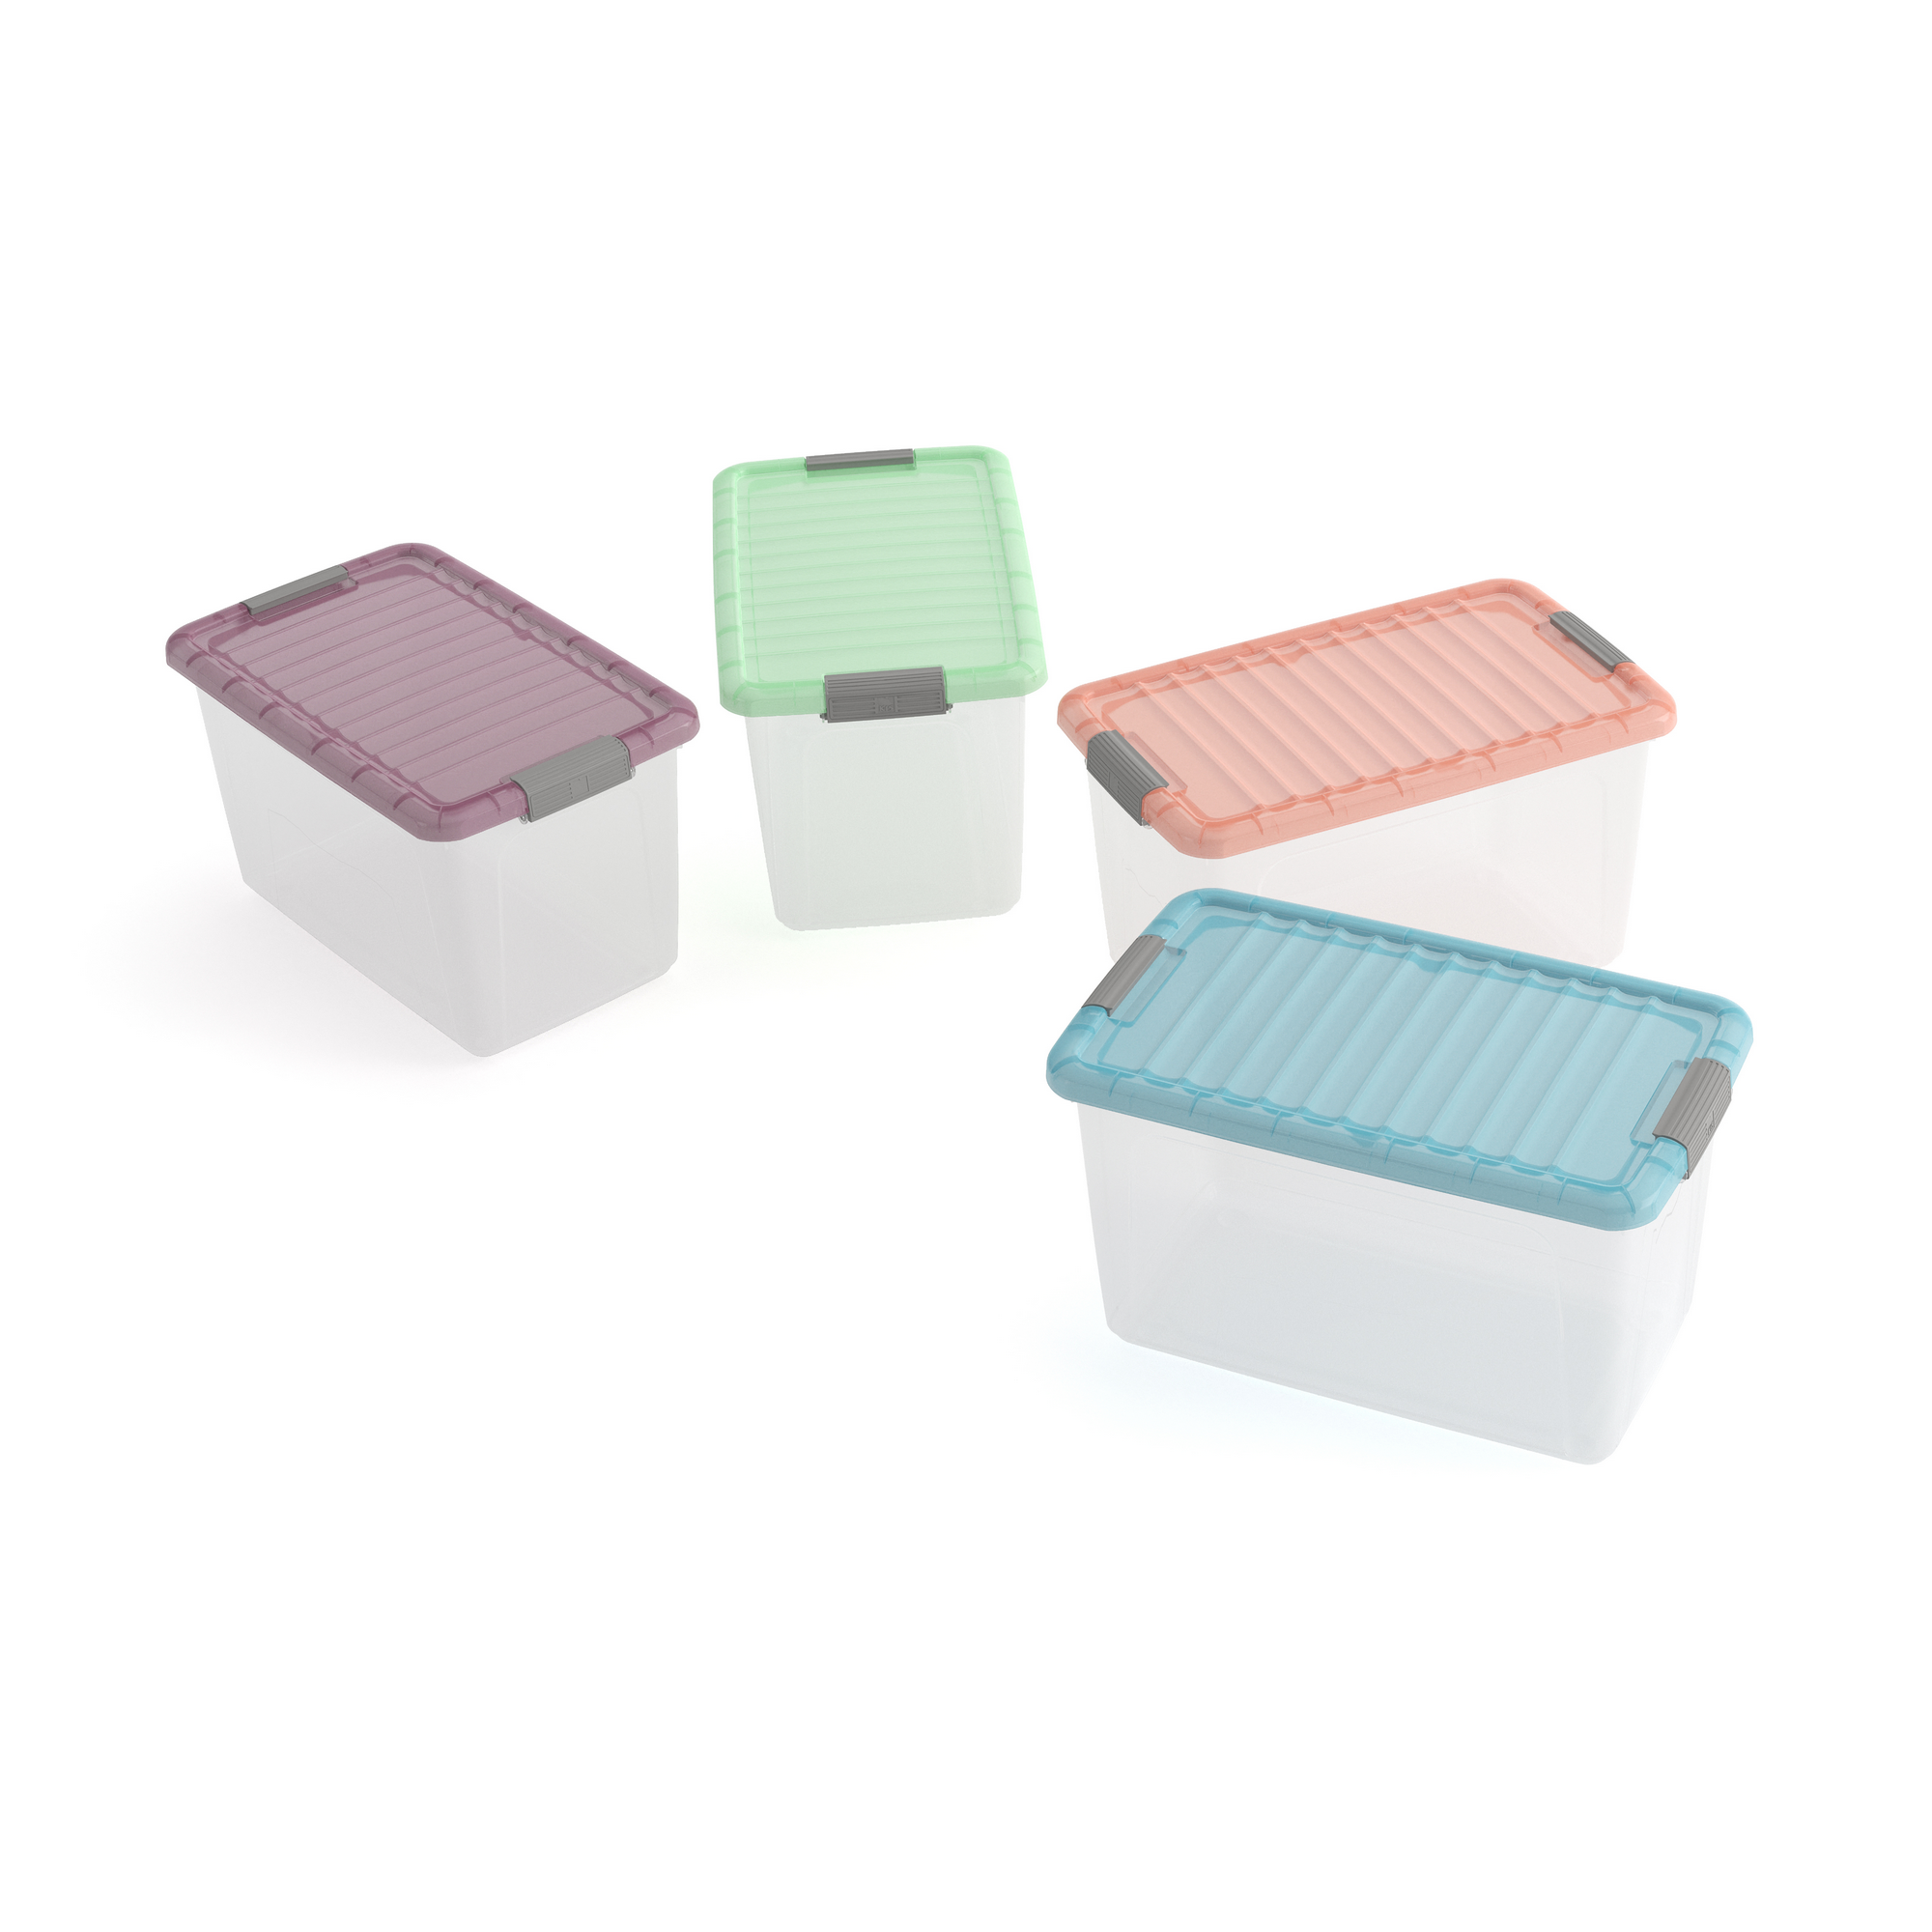 Aufbewahrung 'W Box' L Trend Transparent/Cantaloupe 50 l 56,5 x 39 x 31,5 cm + product picture